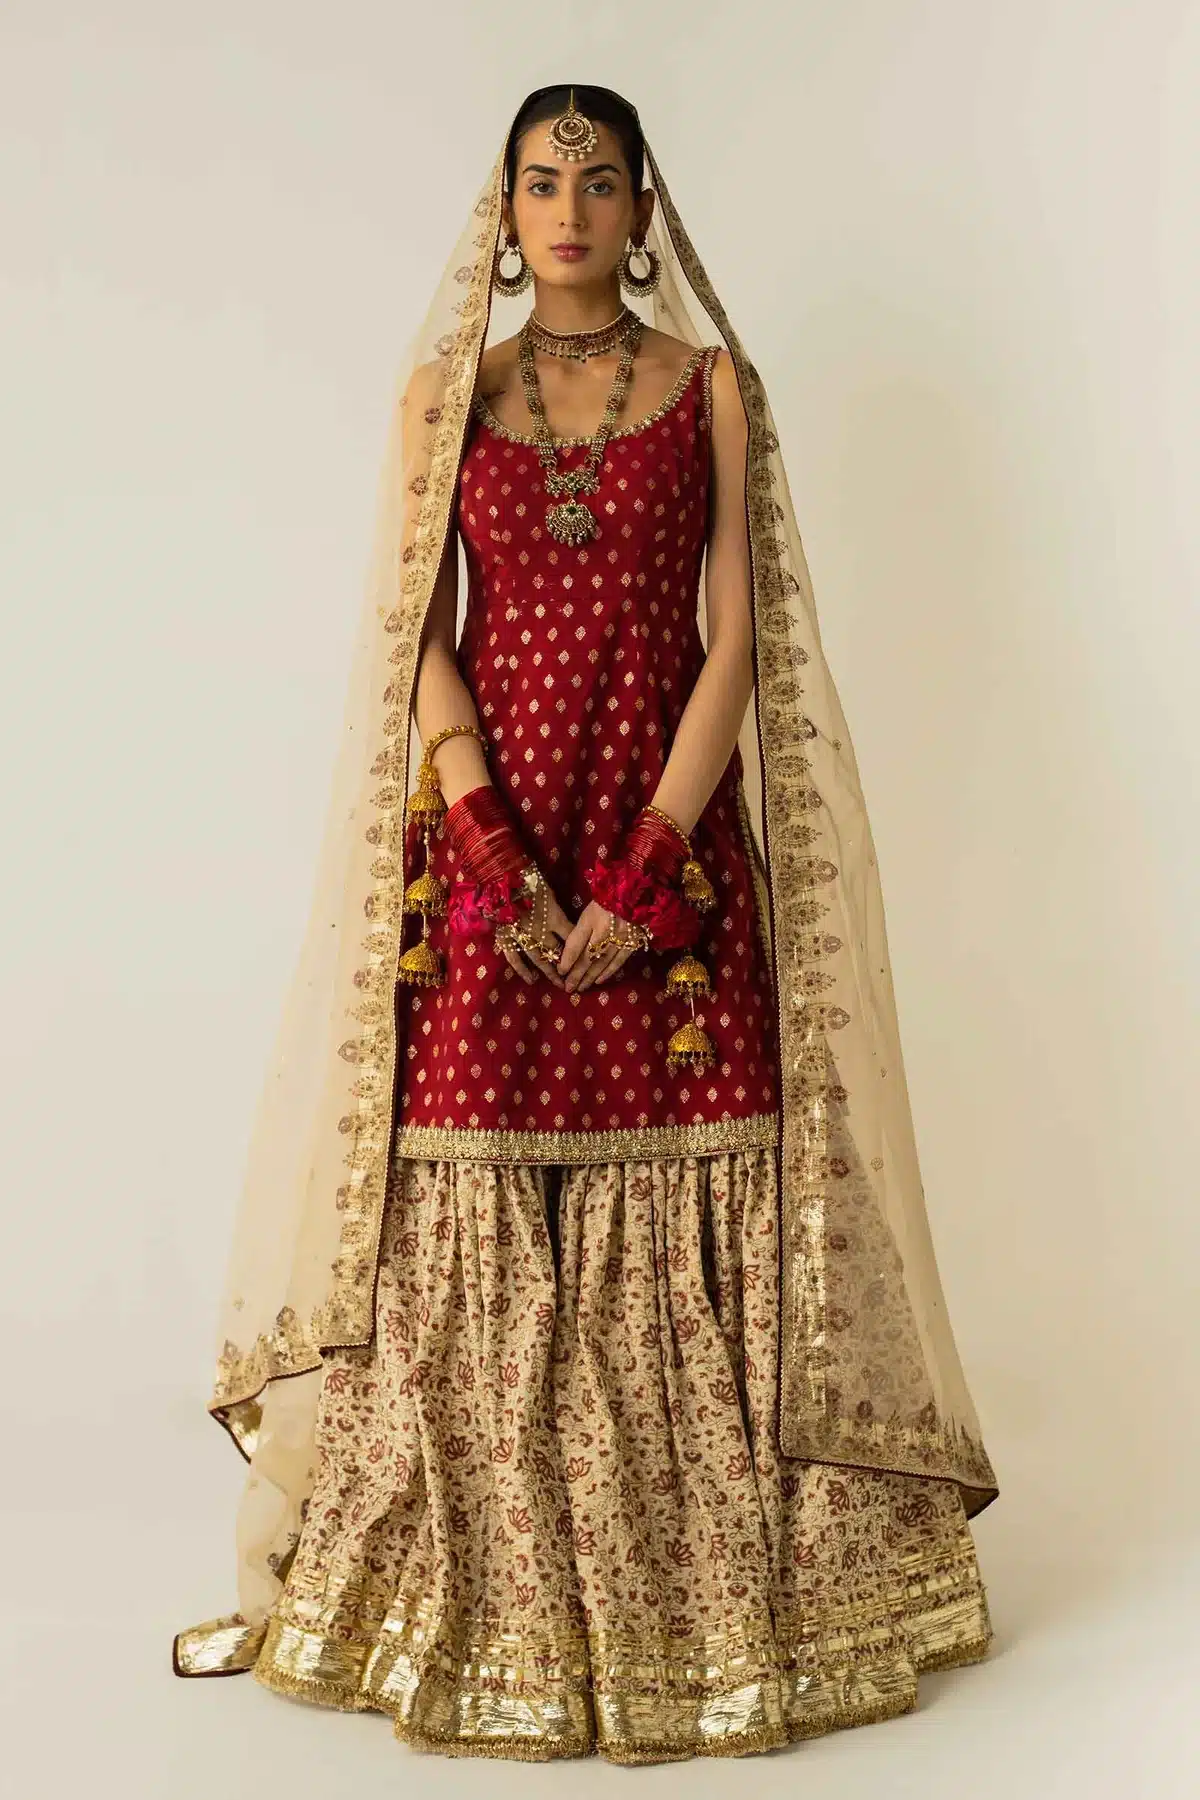 Zara Shahjahan Golden and red color printed gharara bridal dress